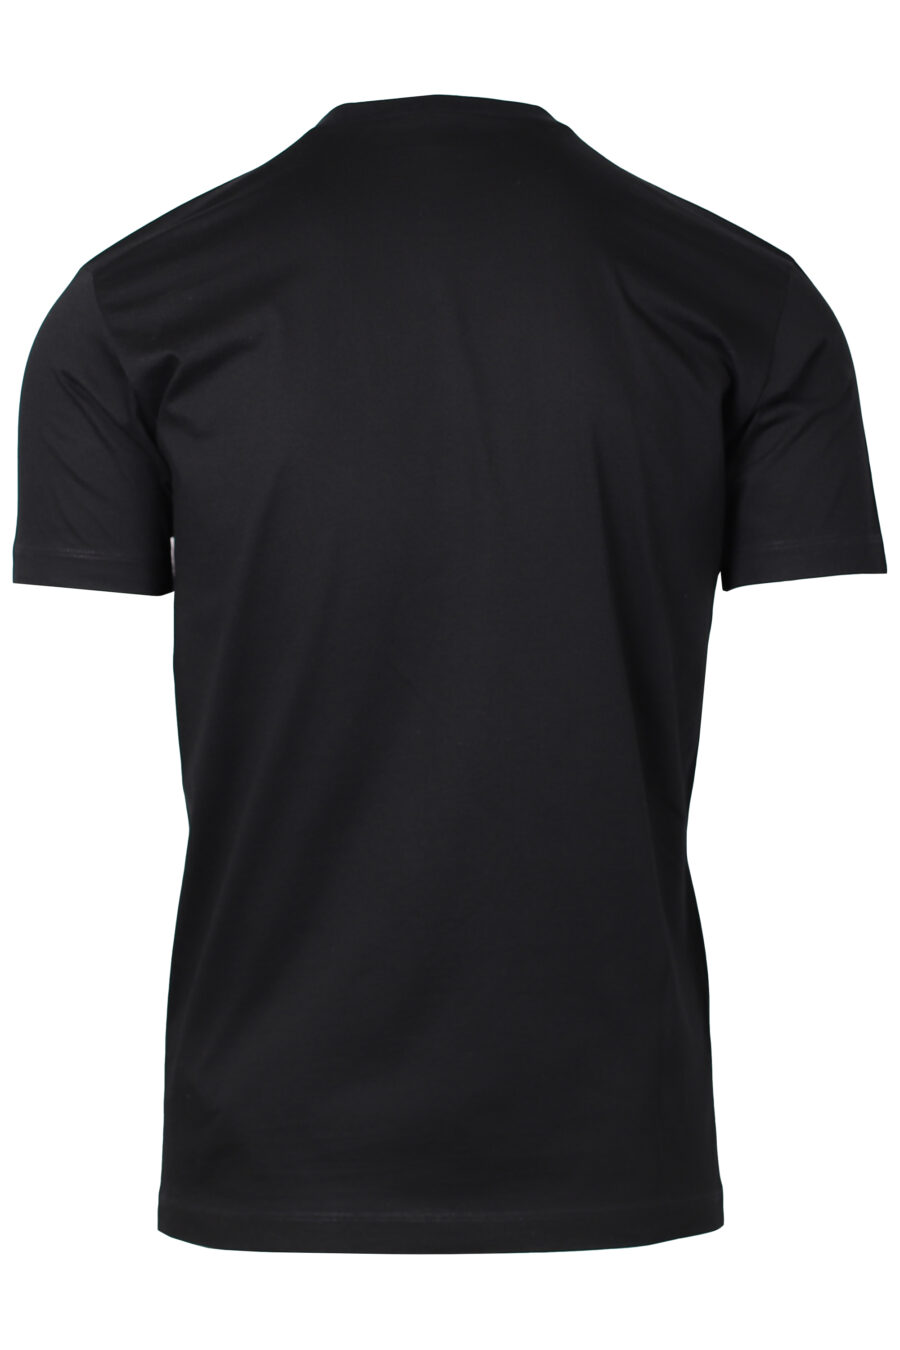 Schwarzes T-Shirt mit weißem vertikalen Maxilogo - IMG 2216